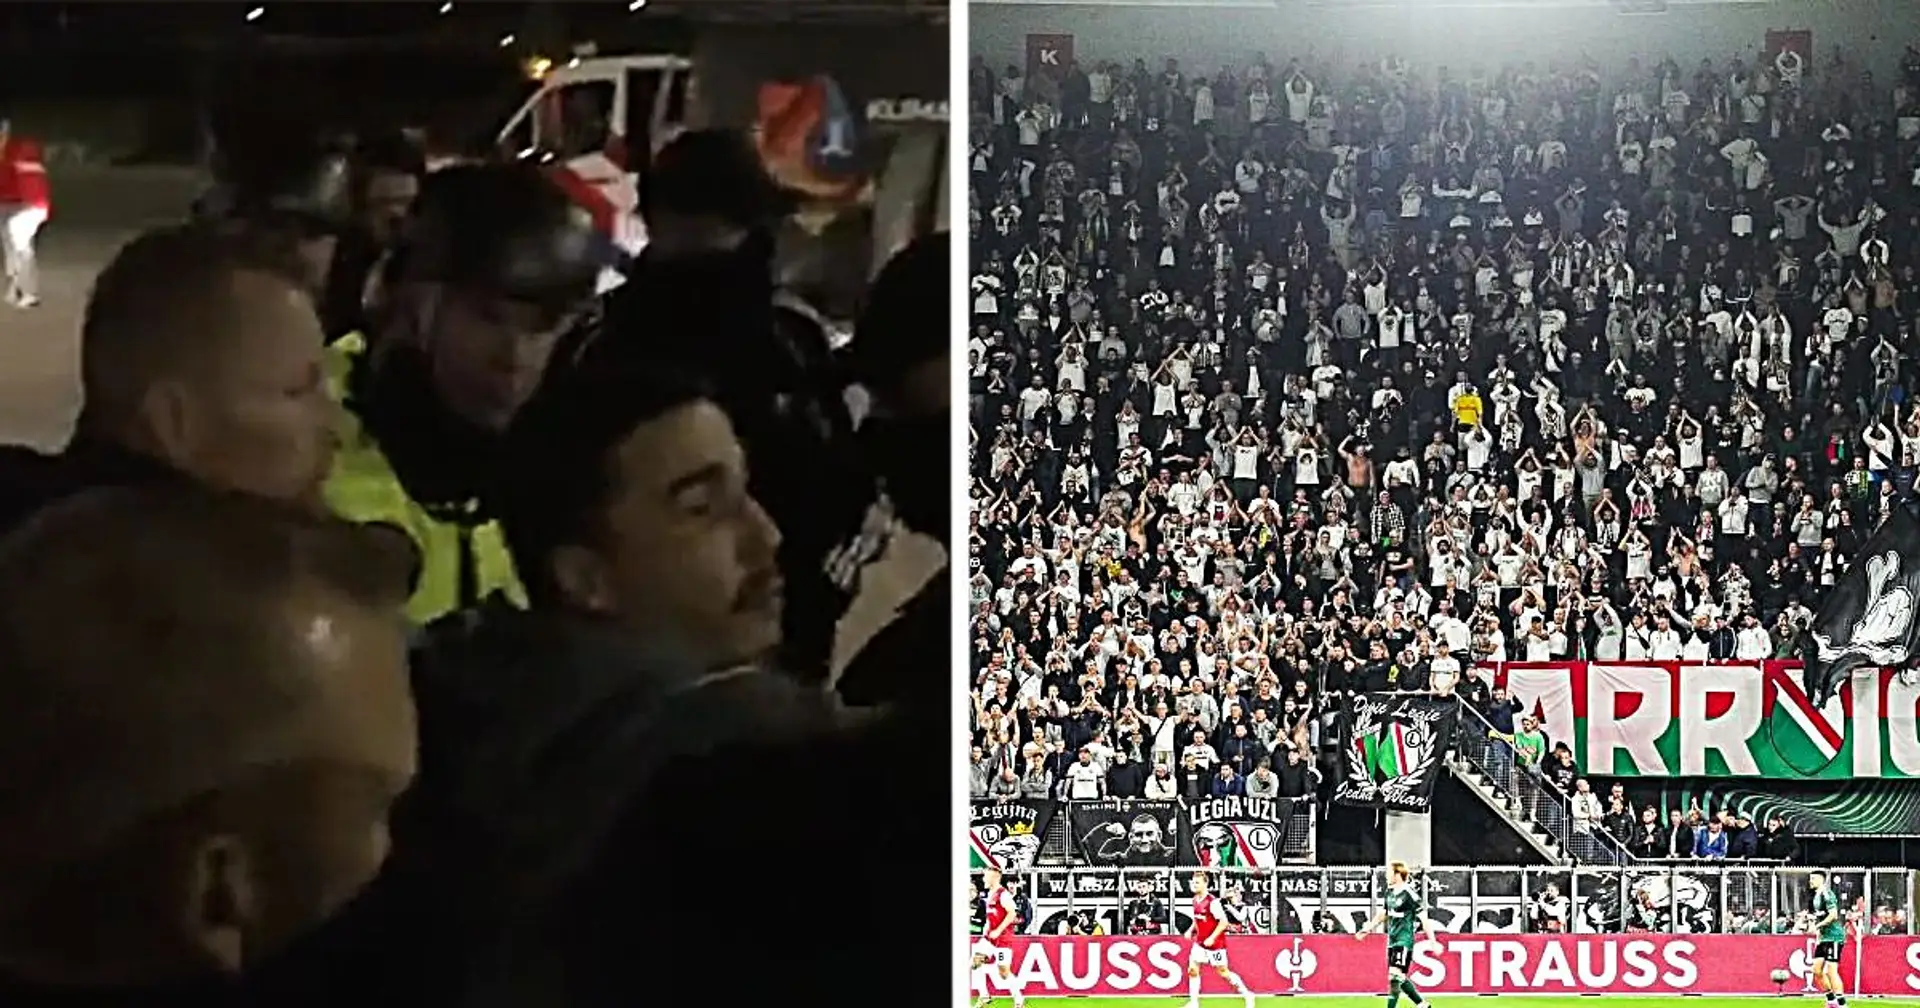 Le président du Legia frappé au visage lors d'un affrontement entre supporters et policiers après le match vs AZ, deux joueurs arrêtés